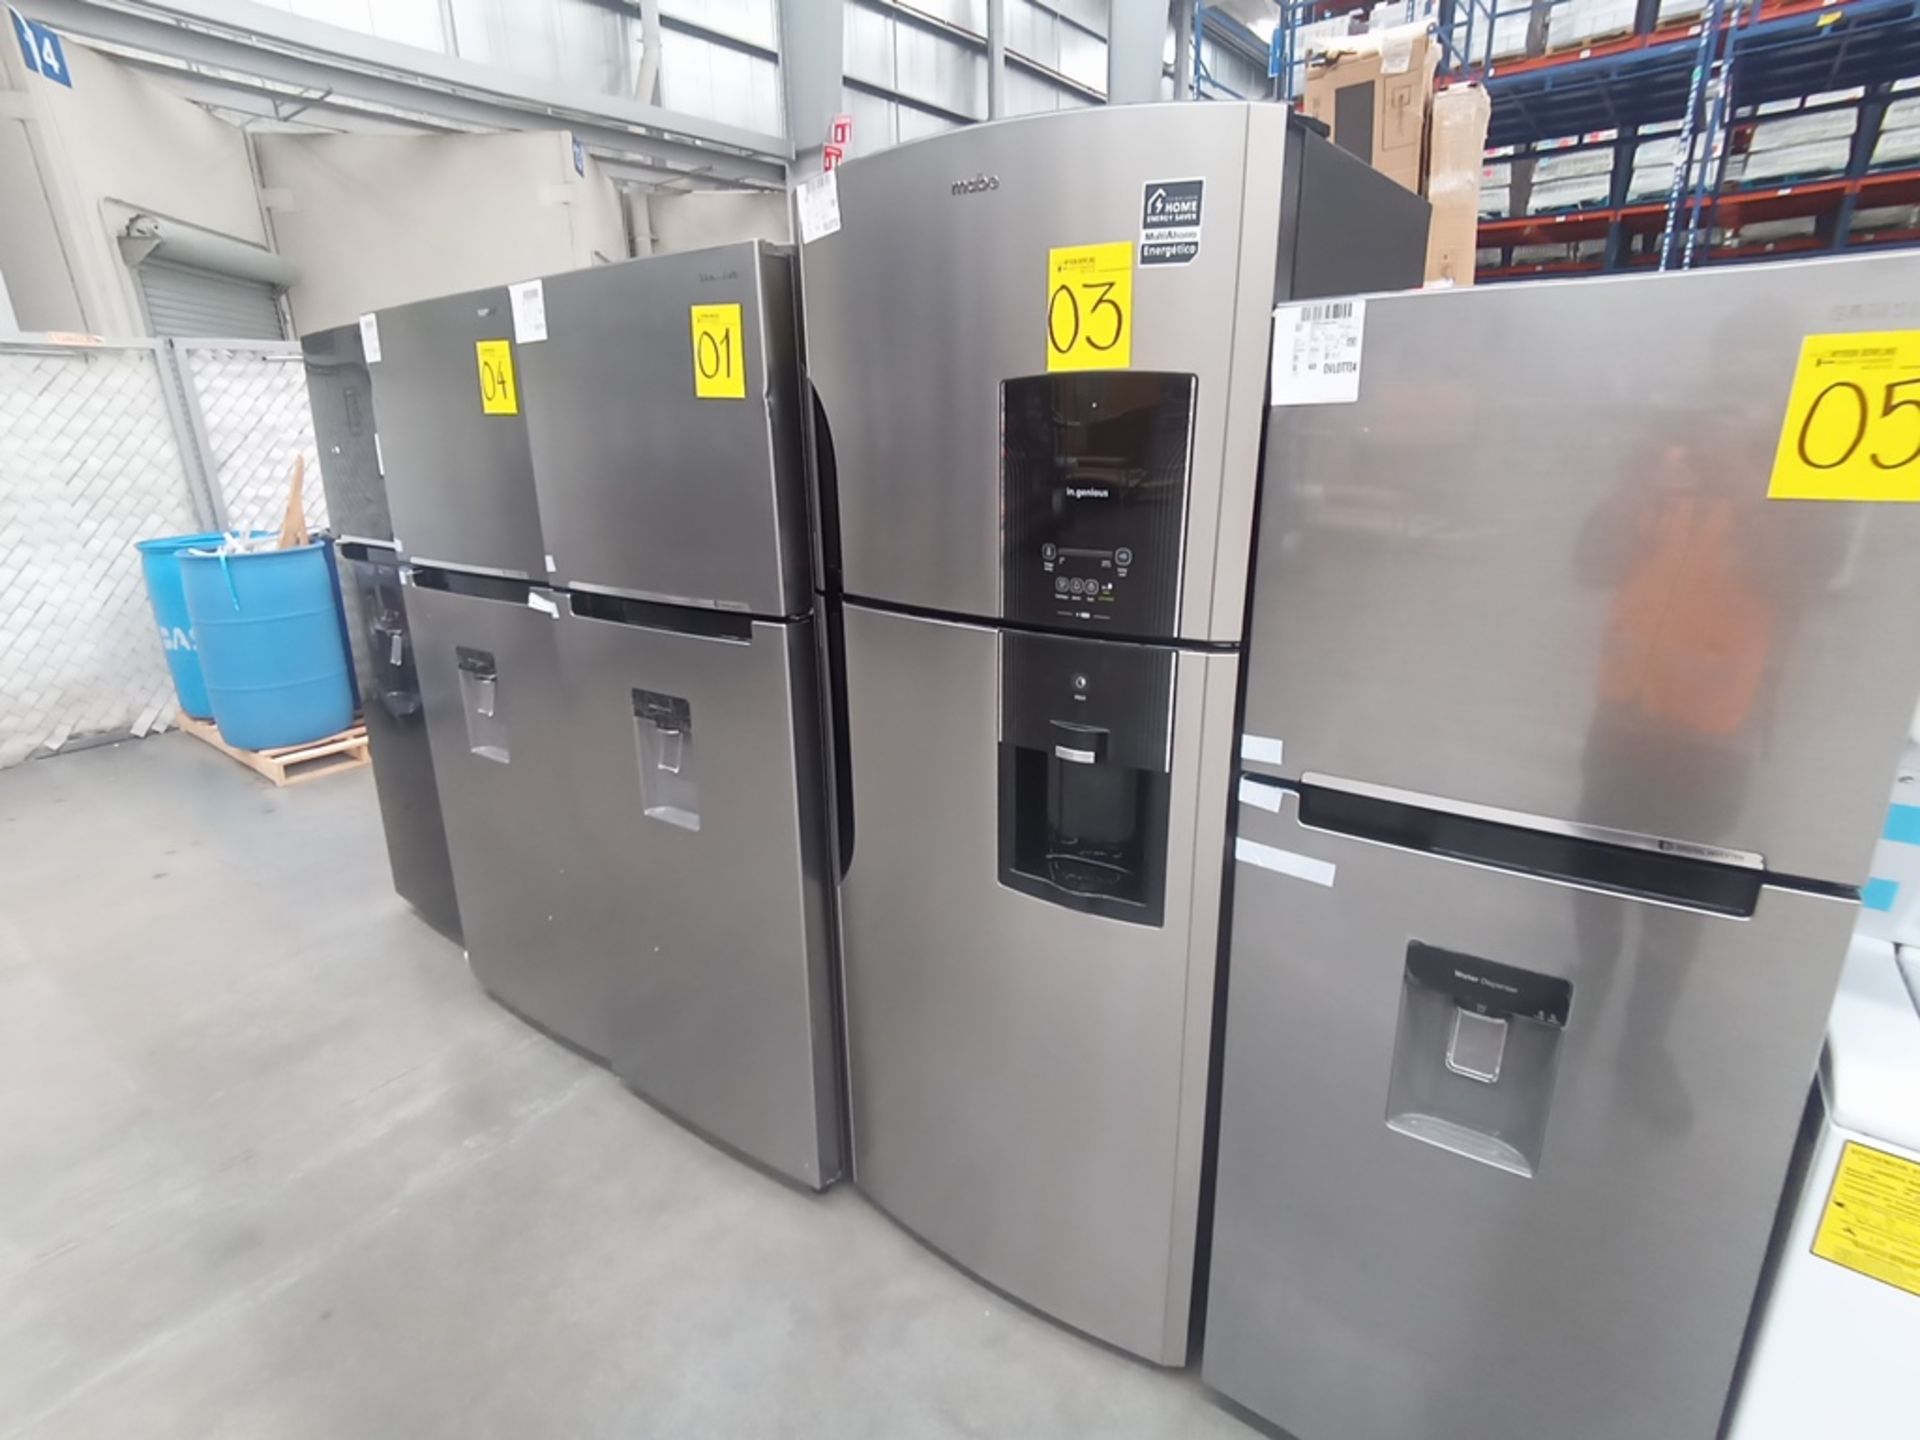 1 Refrigerador Marca Mabe, Modelo RMS6510IBMRXA, Serie 2201B408657, Color Gris, Golpeado, Favor de